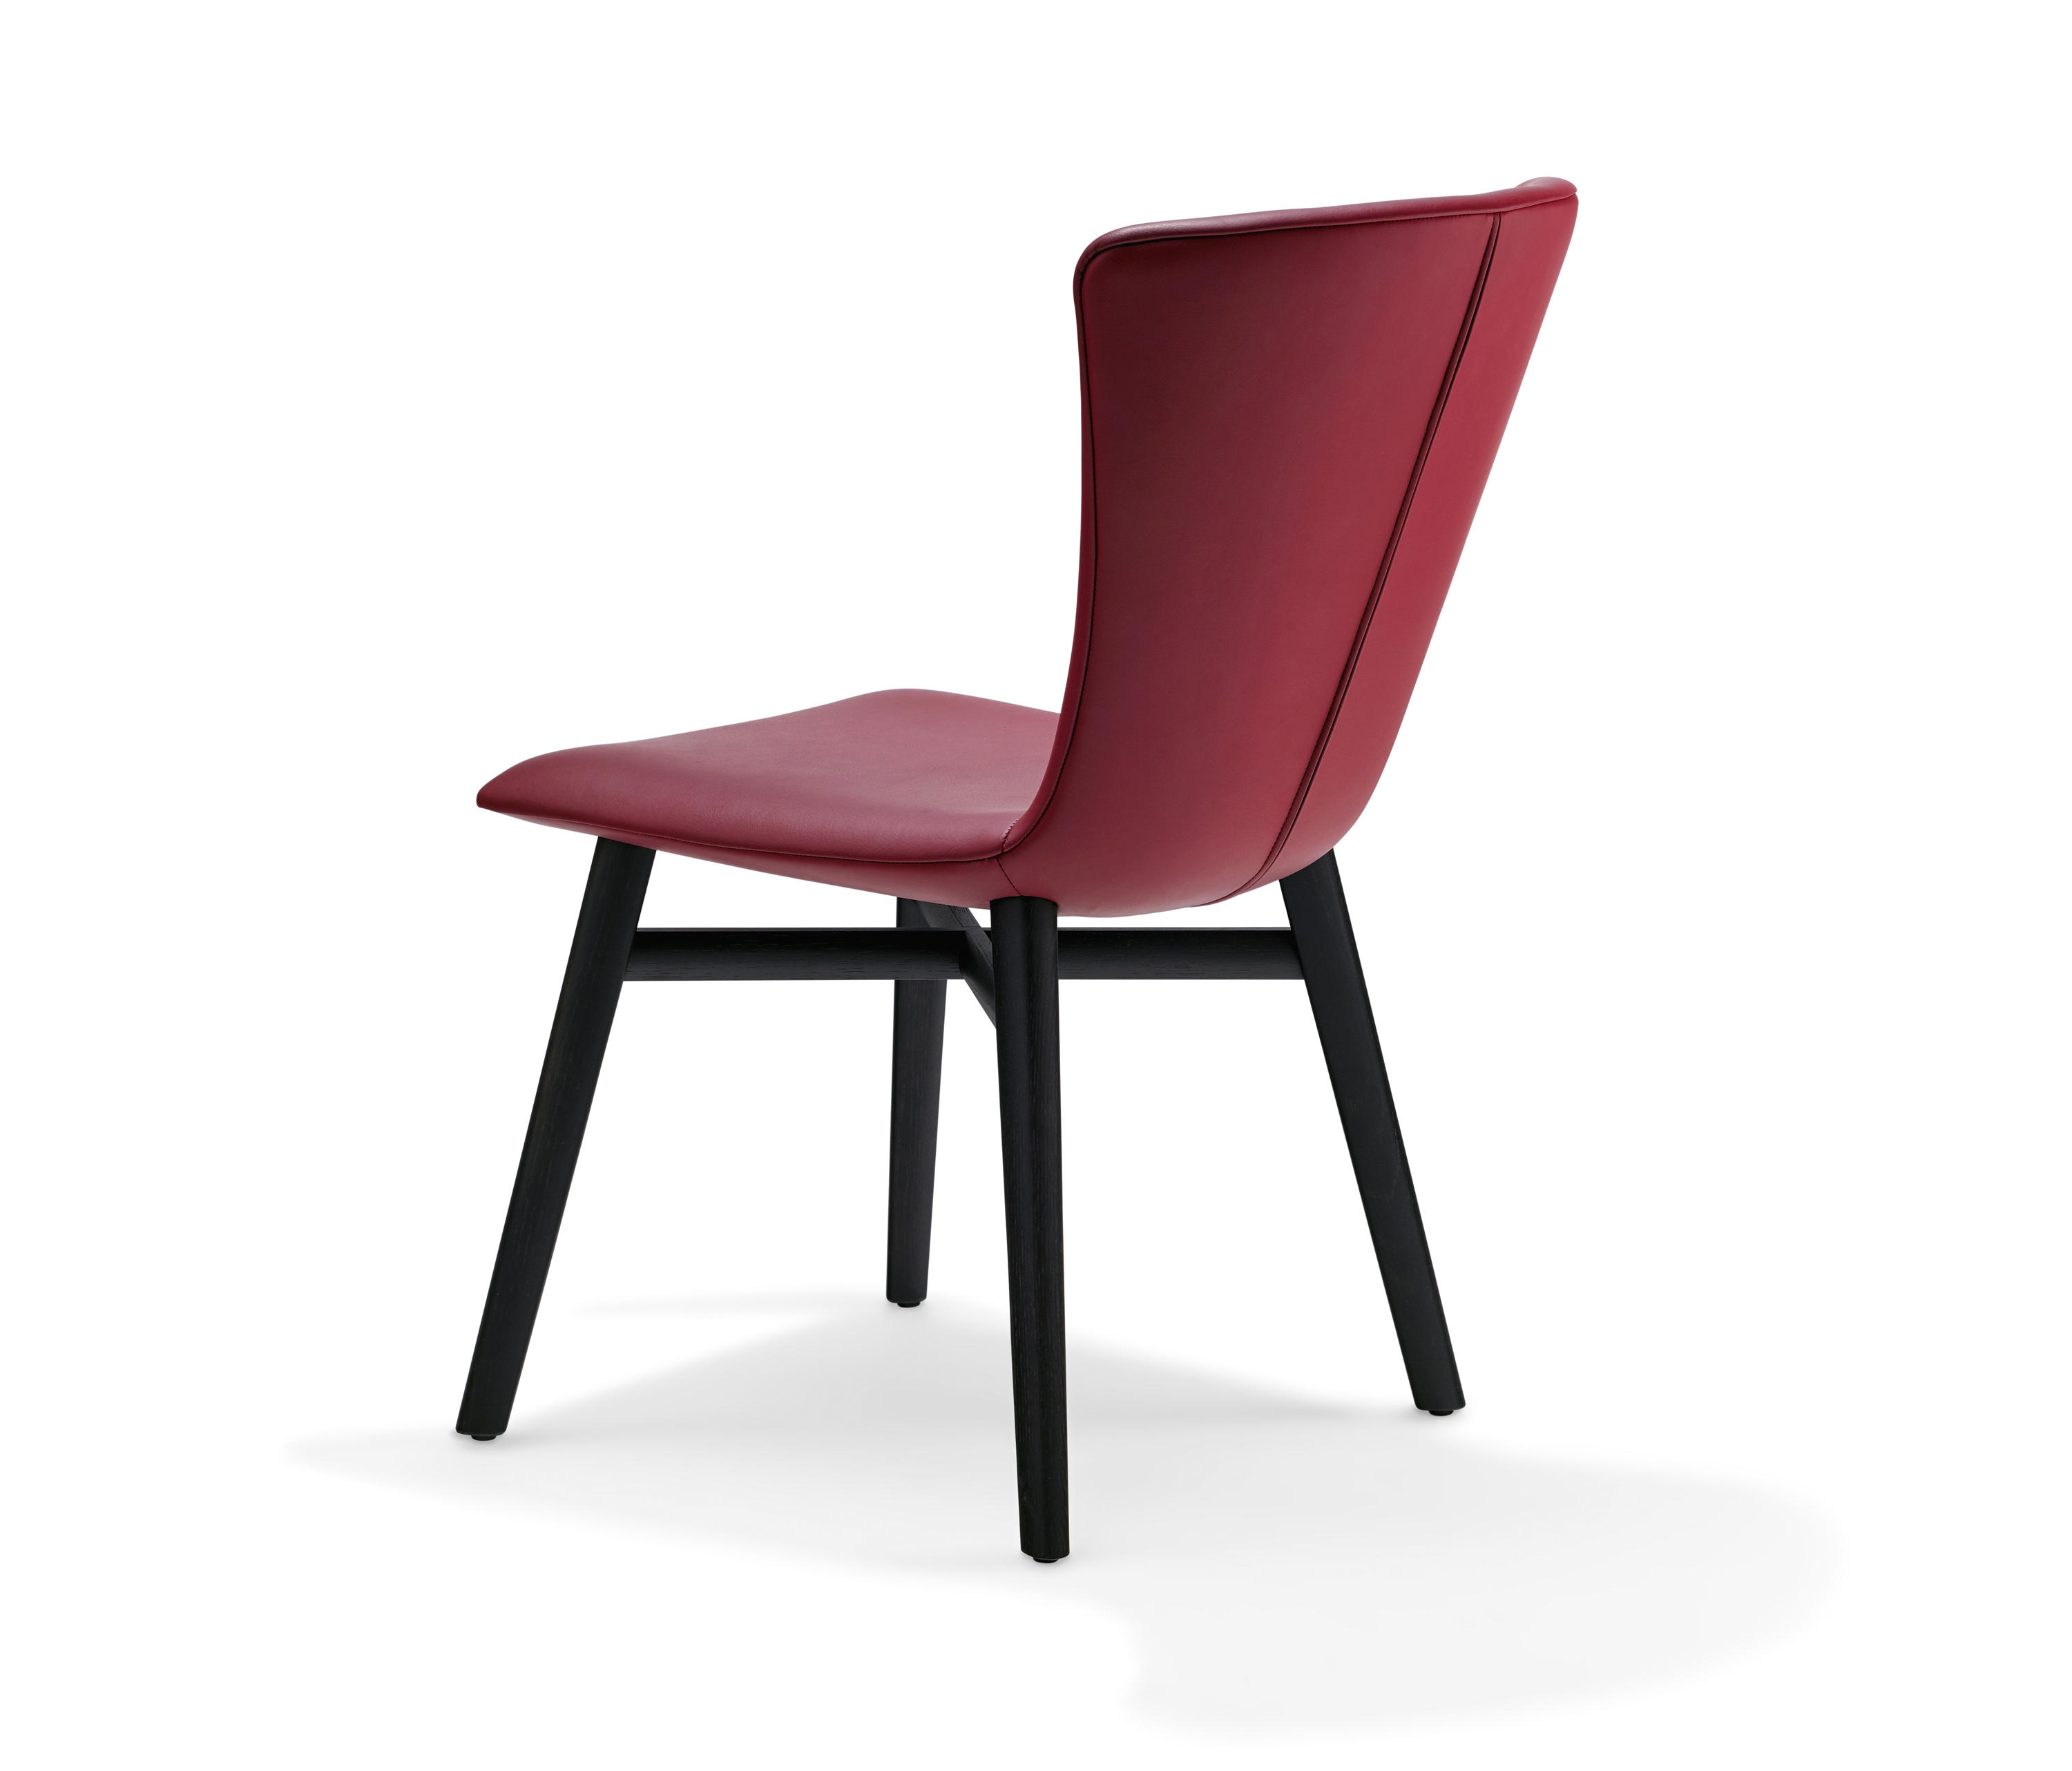 DEXTER Chair by Draenert